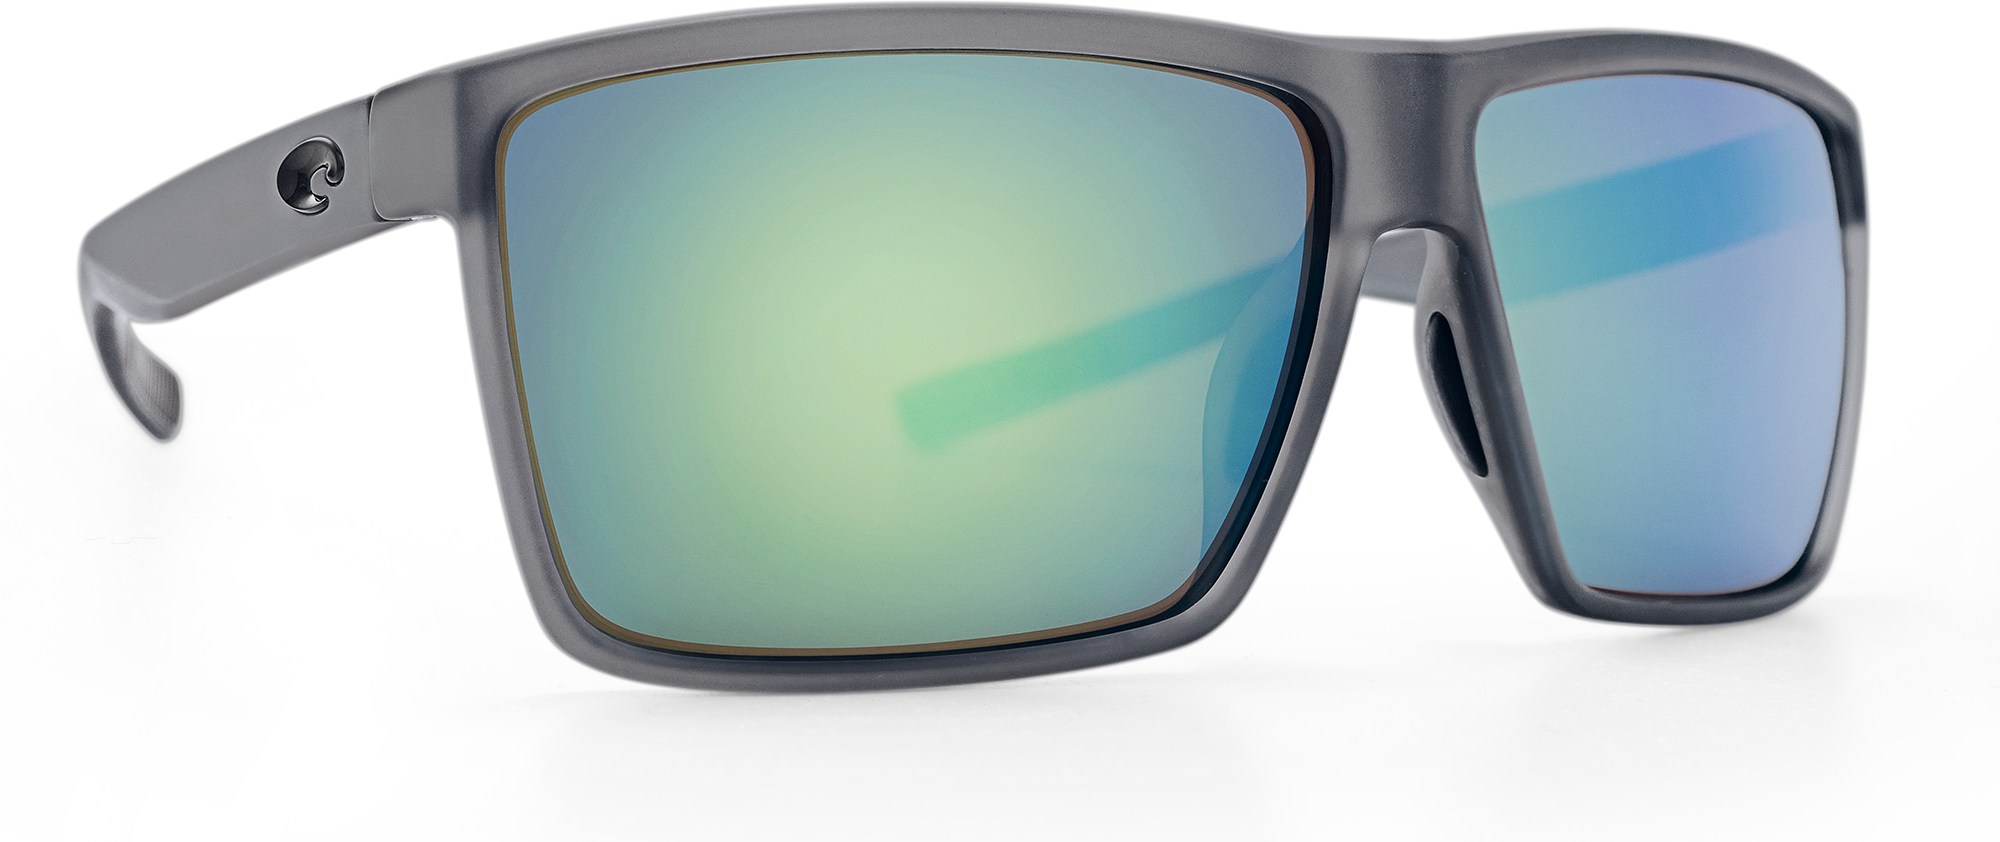 Солнцезащитные очки с поляризацией 204527285. Очки поляризационные Costa Reefton Pro 580g. Солнцезащитные очки с дымкой. Green Mirror Costa del Mar.